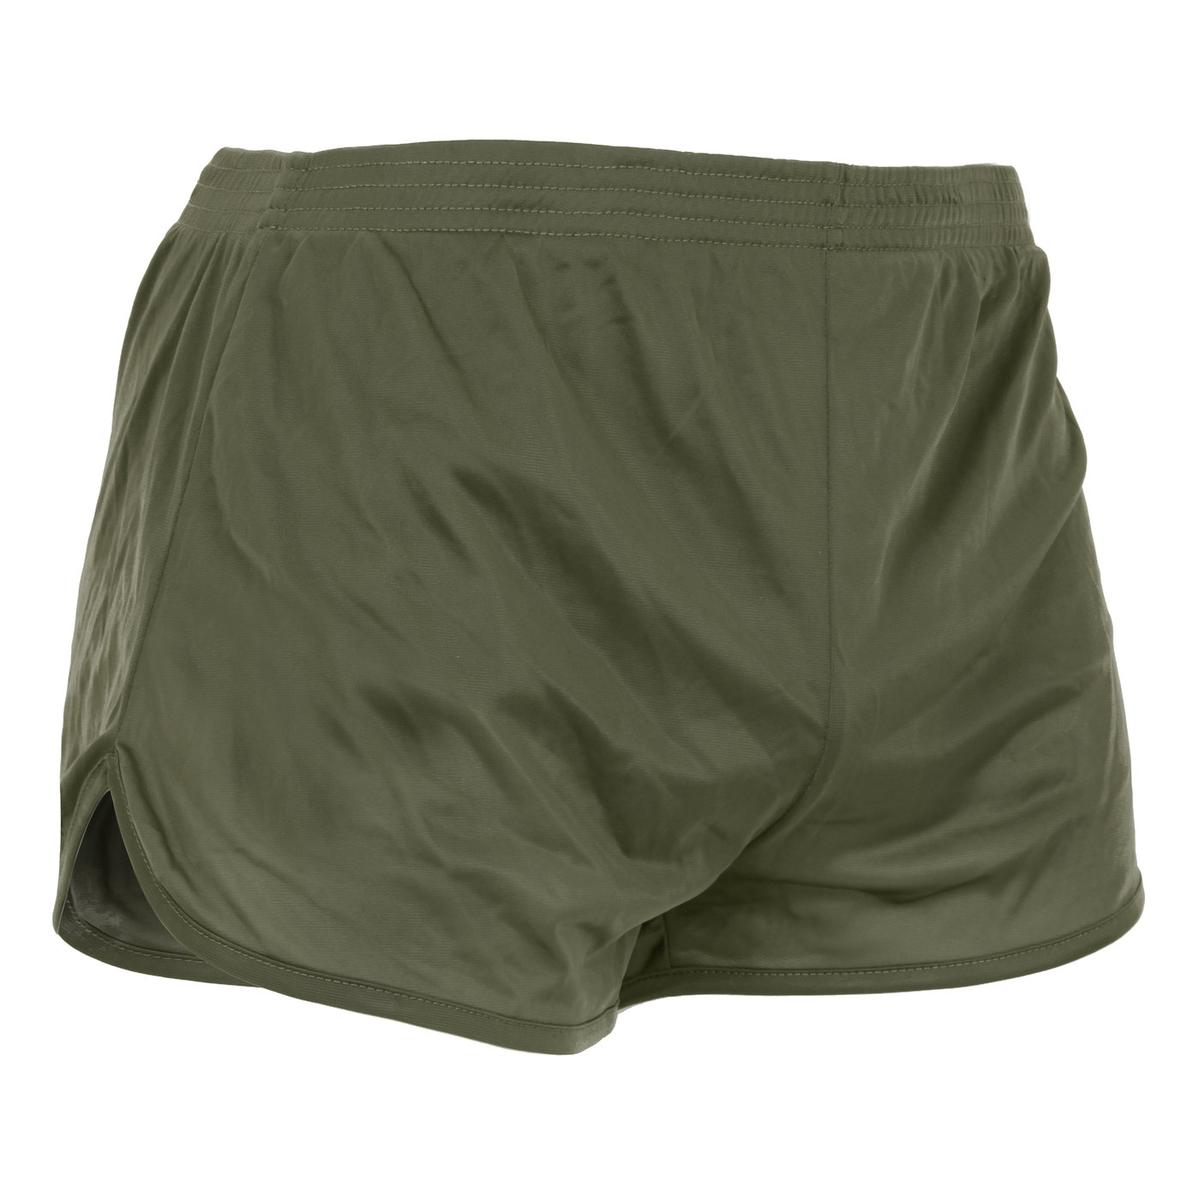 Rothco Short Black Army Ranger Panty Shorts